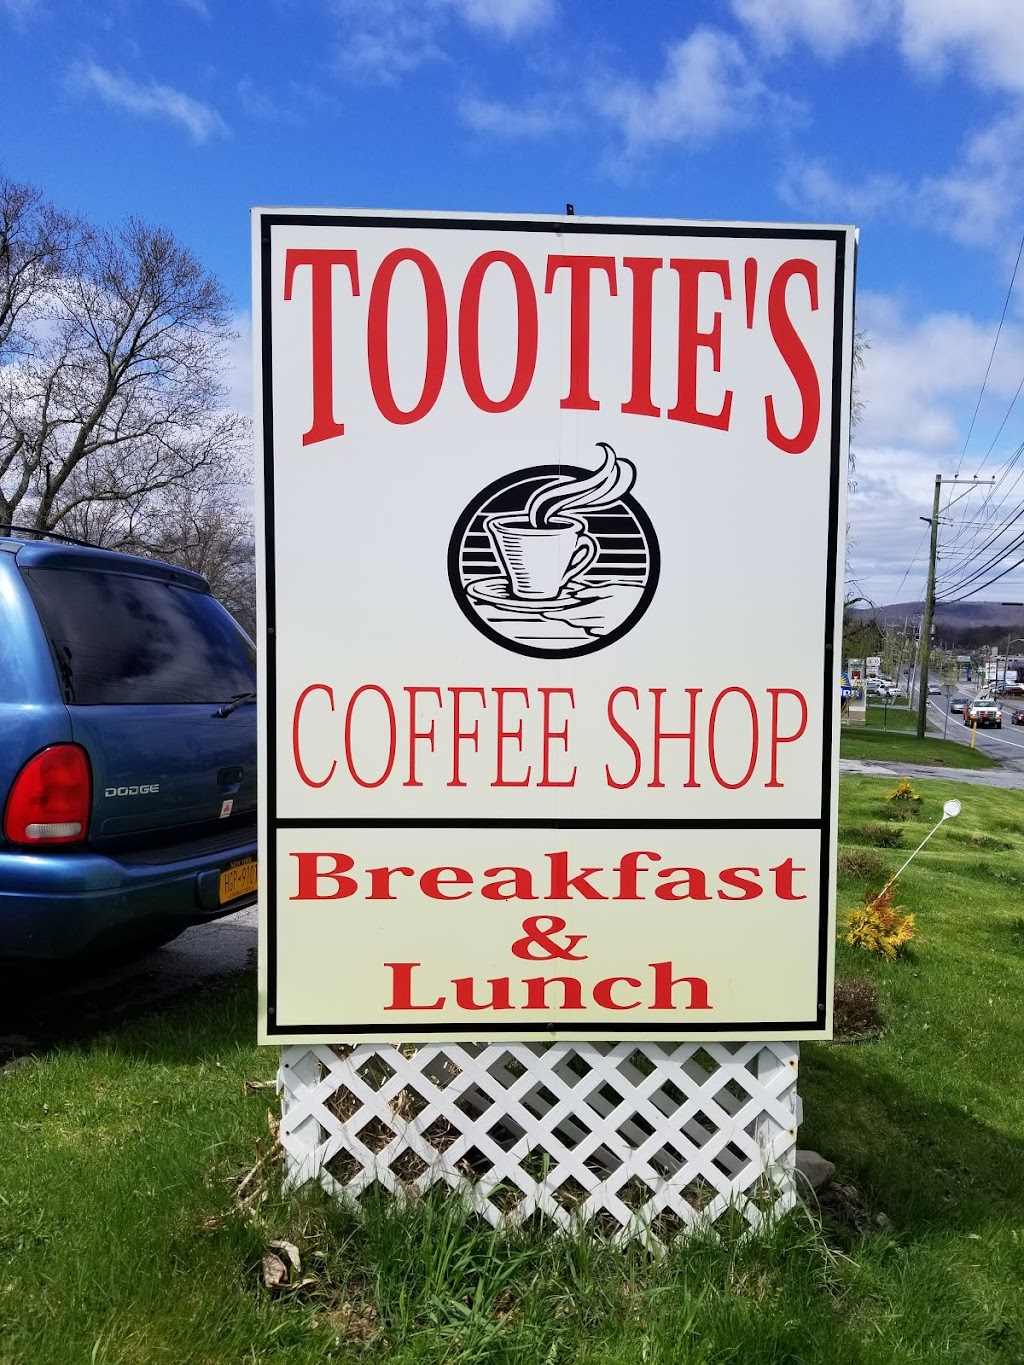 Tooties Coffee Shop | 4921 NY-17M, New Hampton, NY 10958 | Phone: (845) 374-8235